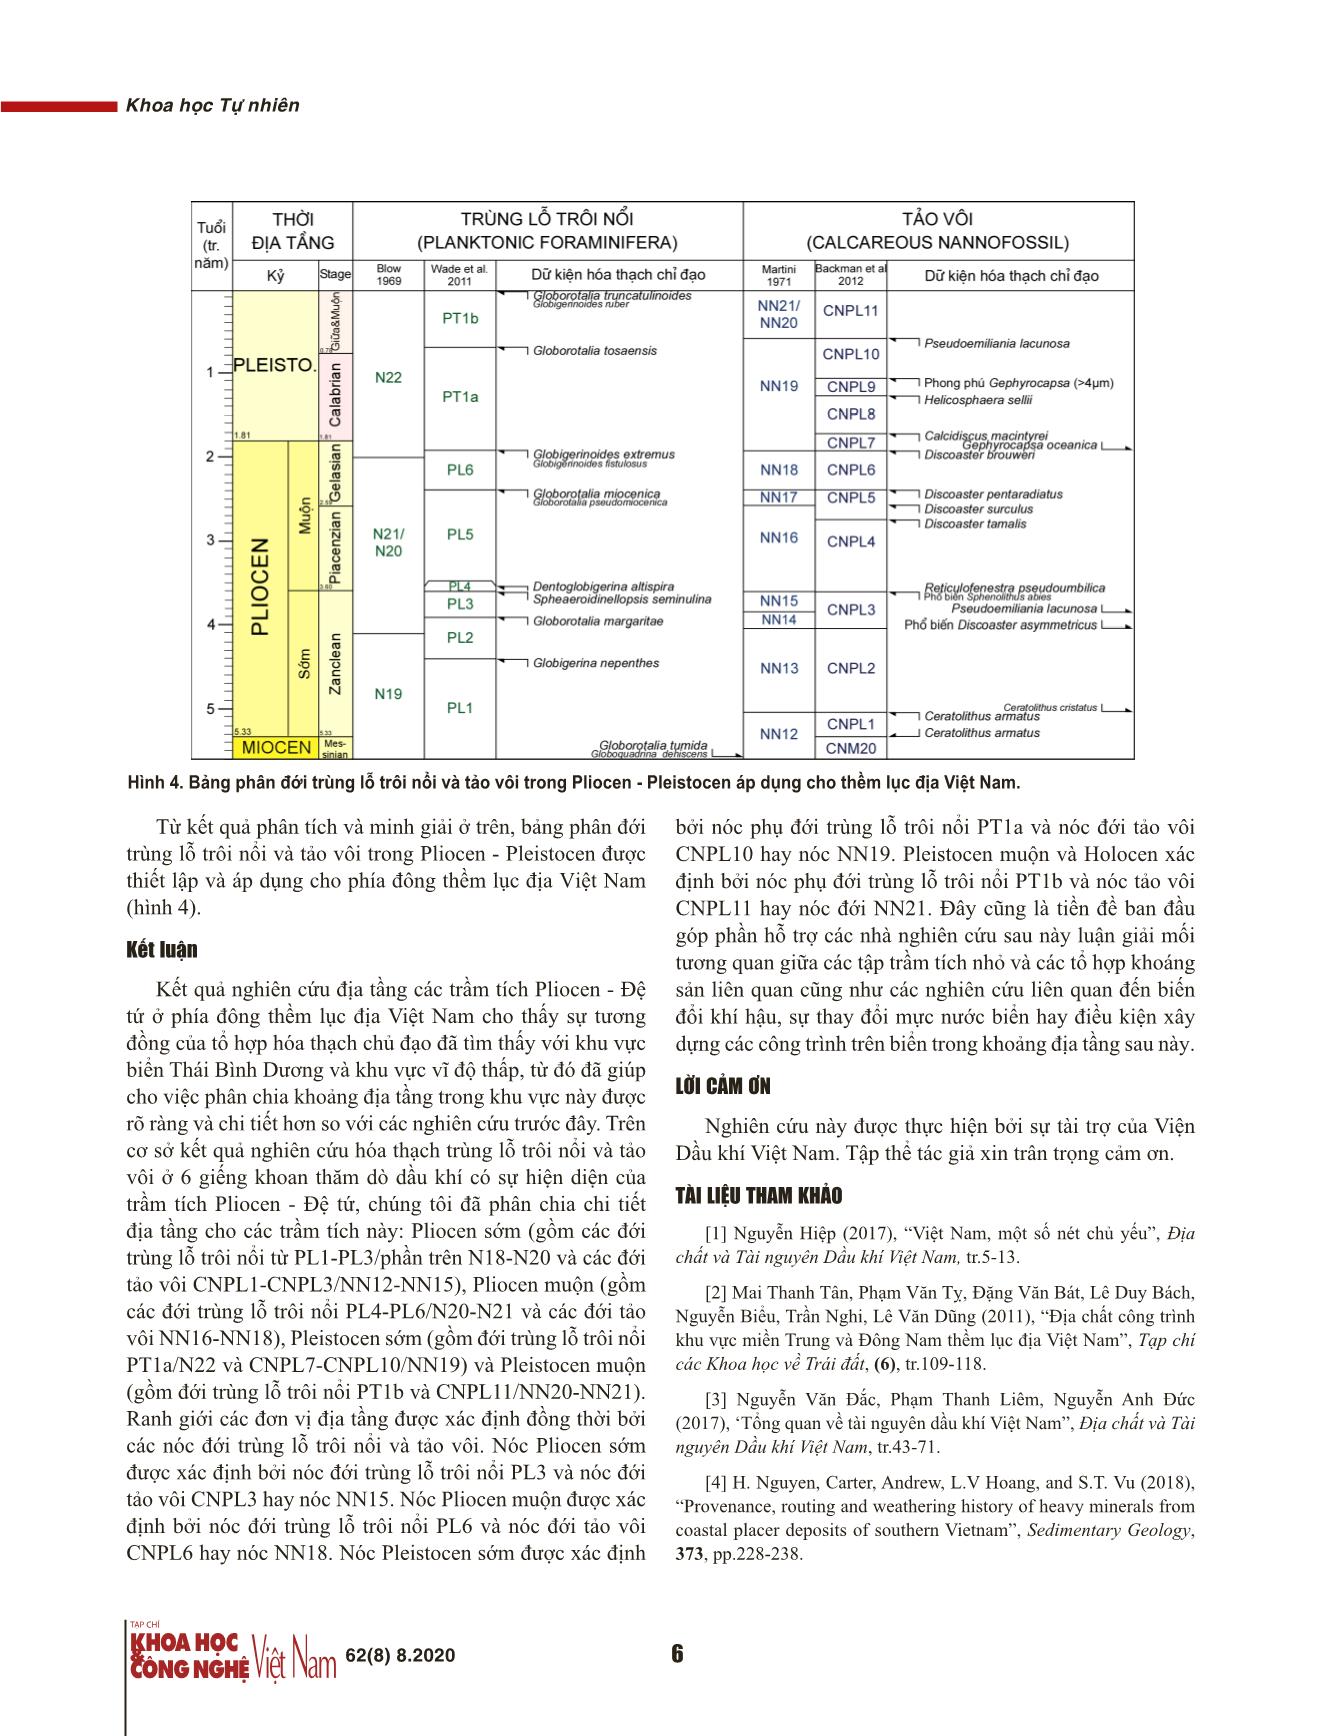 Phân chia địa tầng Pliocen - Đệ tứ ở phía đông thềm lục địa Việt Nam trên cơ sở tài liệu trùng lỗ và tảo vôi trang 6